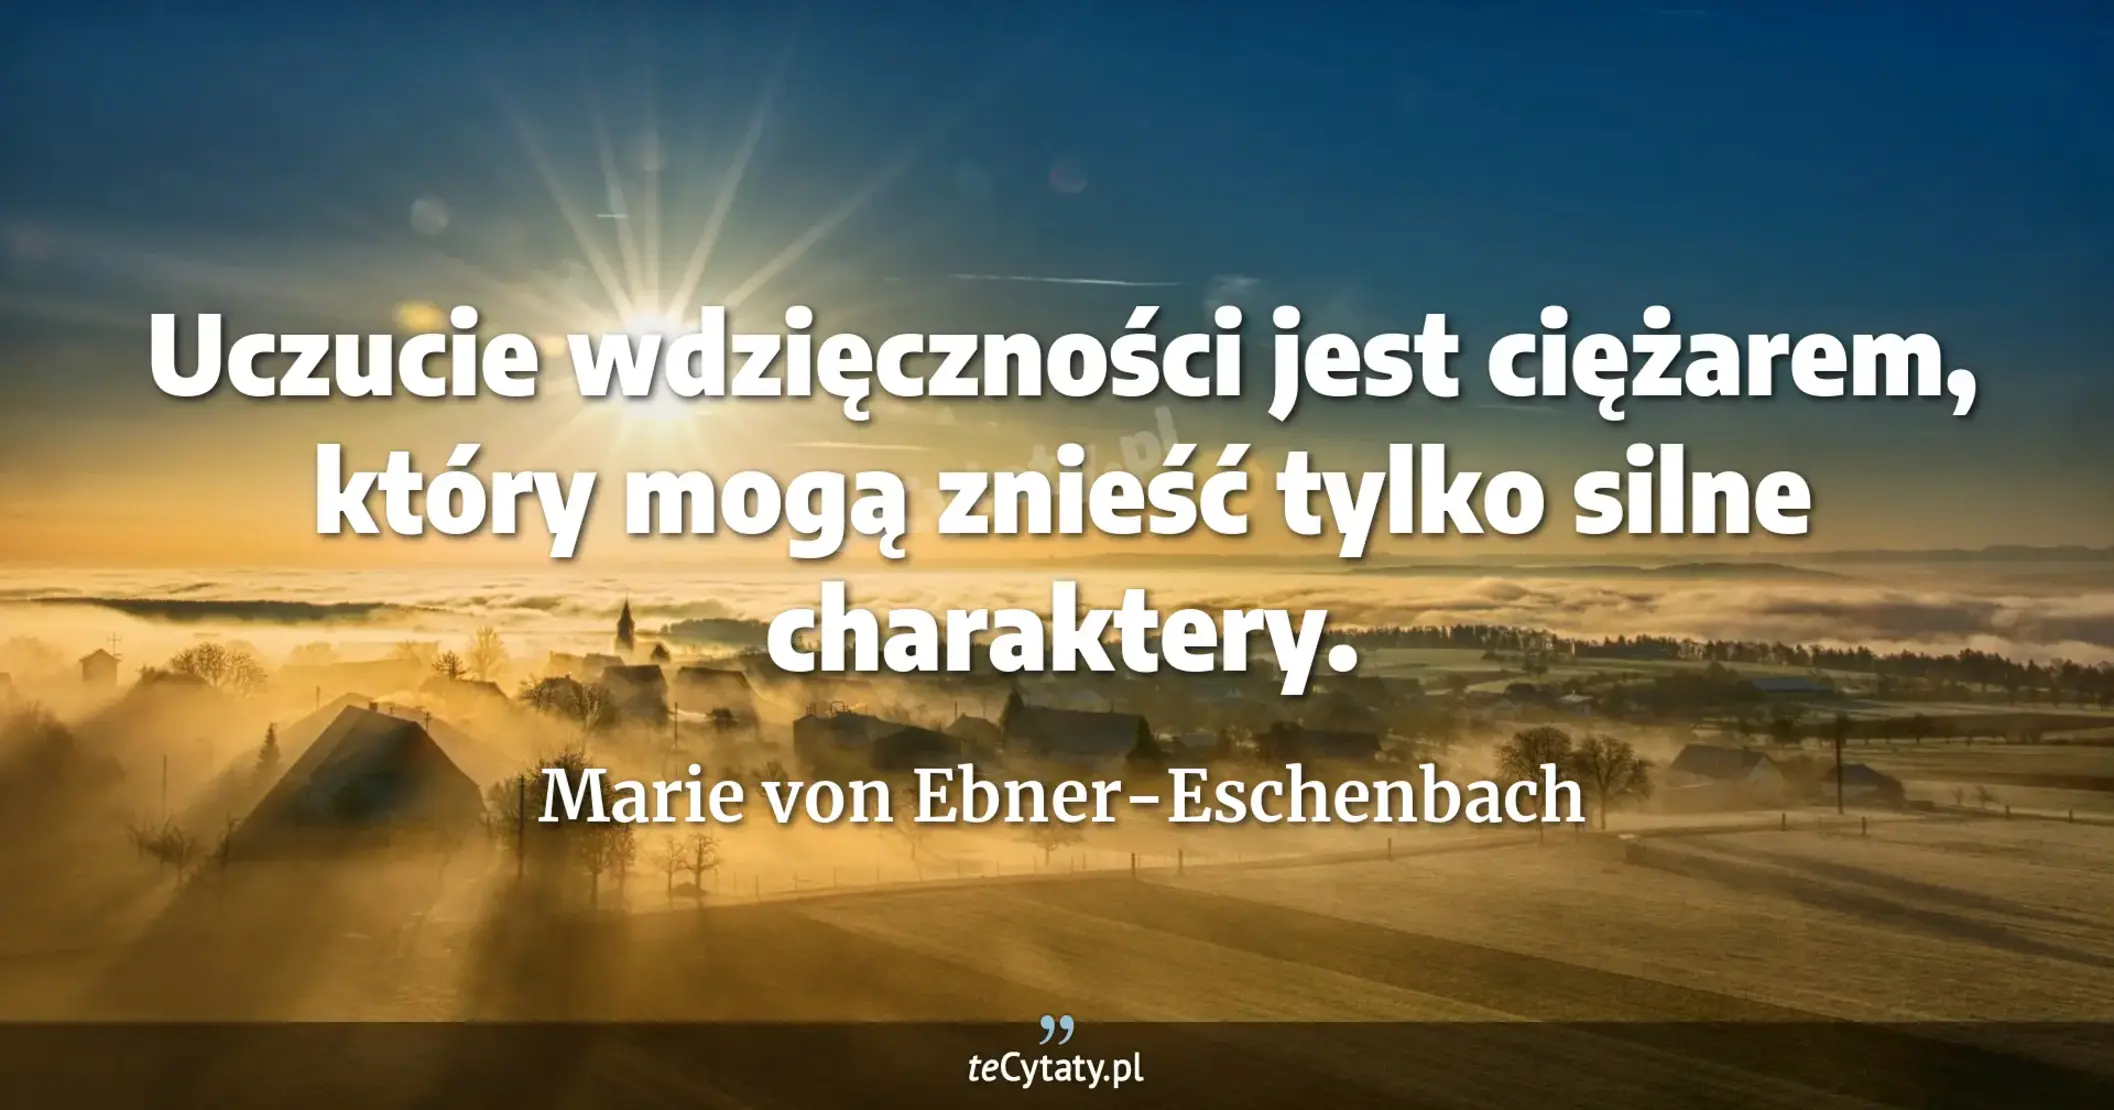 Uczucie wdzięczności jest ciężarem, który mogą znieść tylko silne charaktery. - Marie von Ebner-Eschenbach